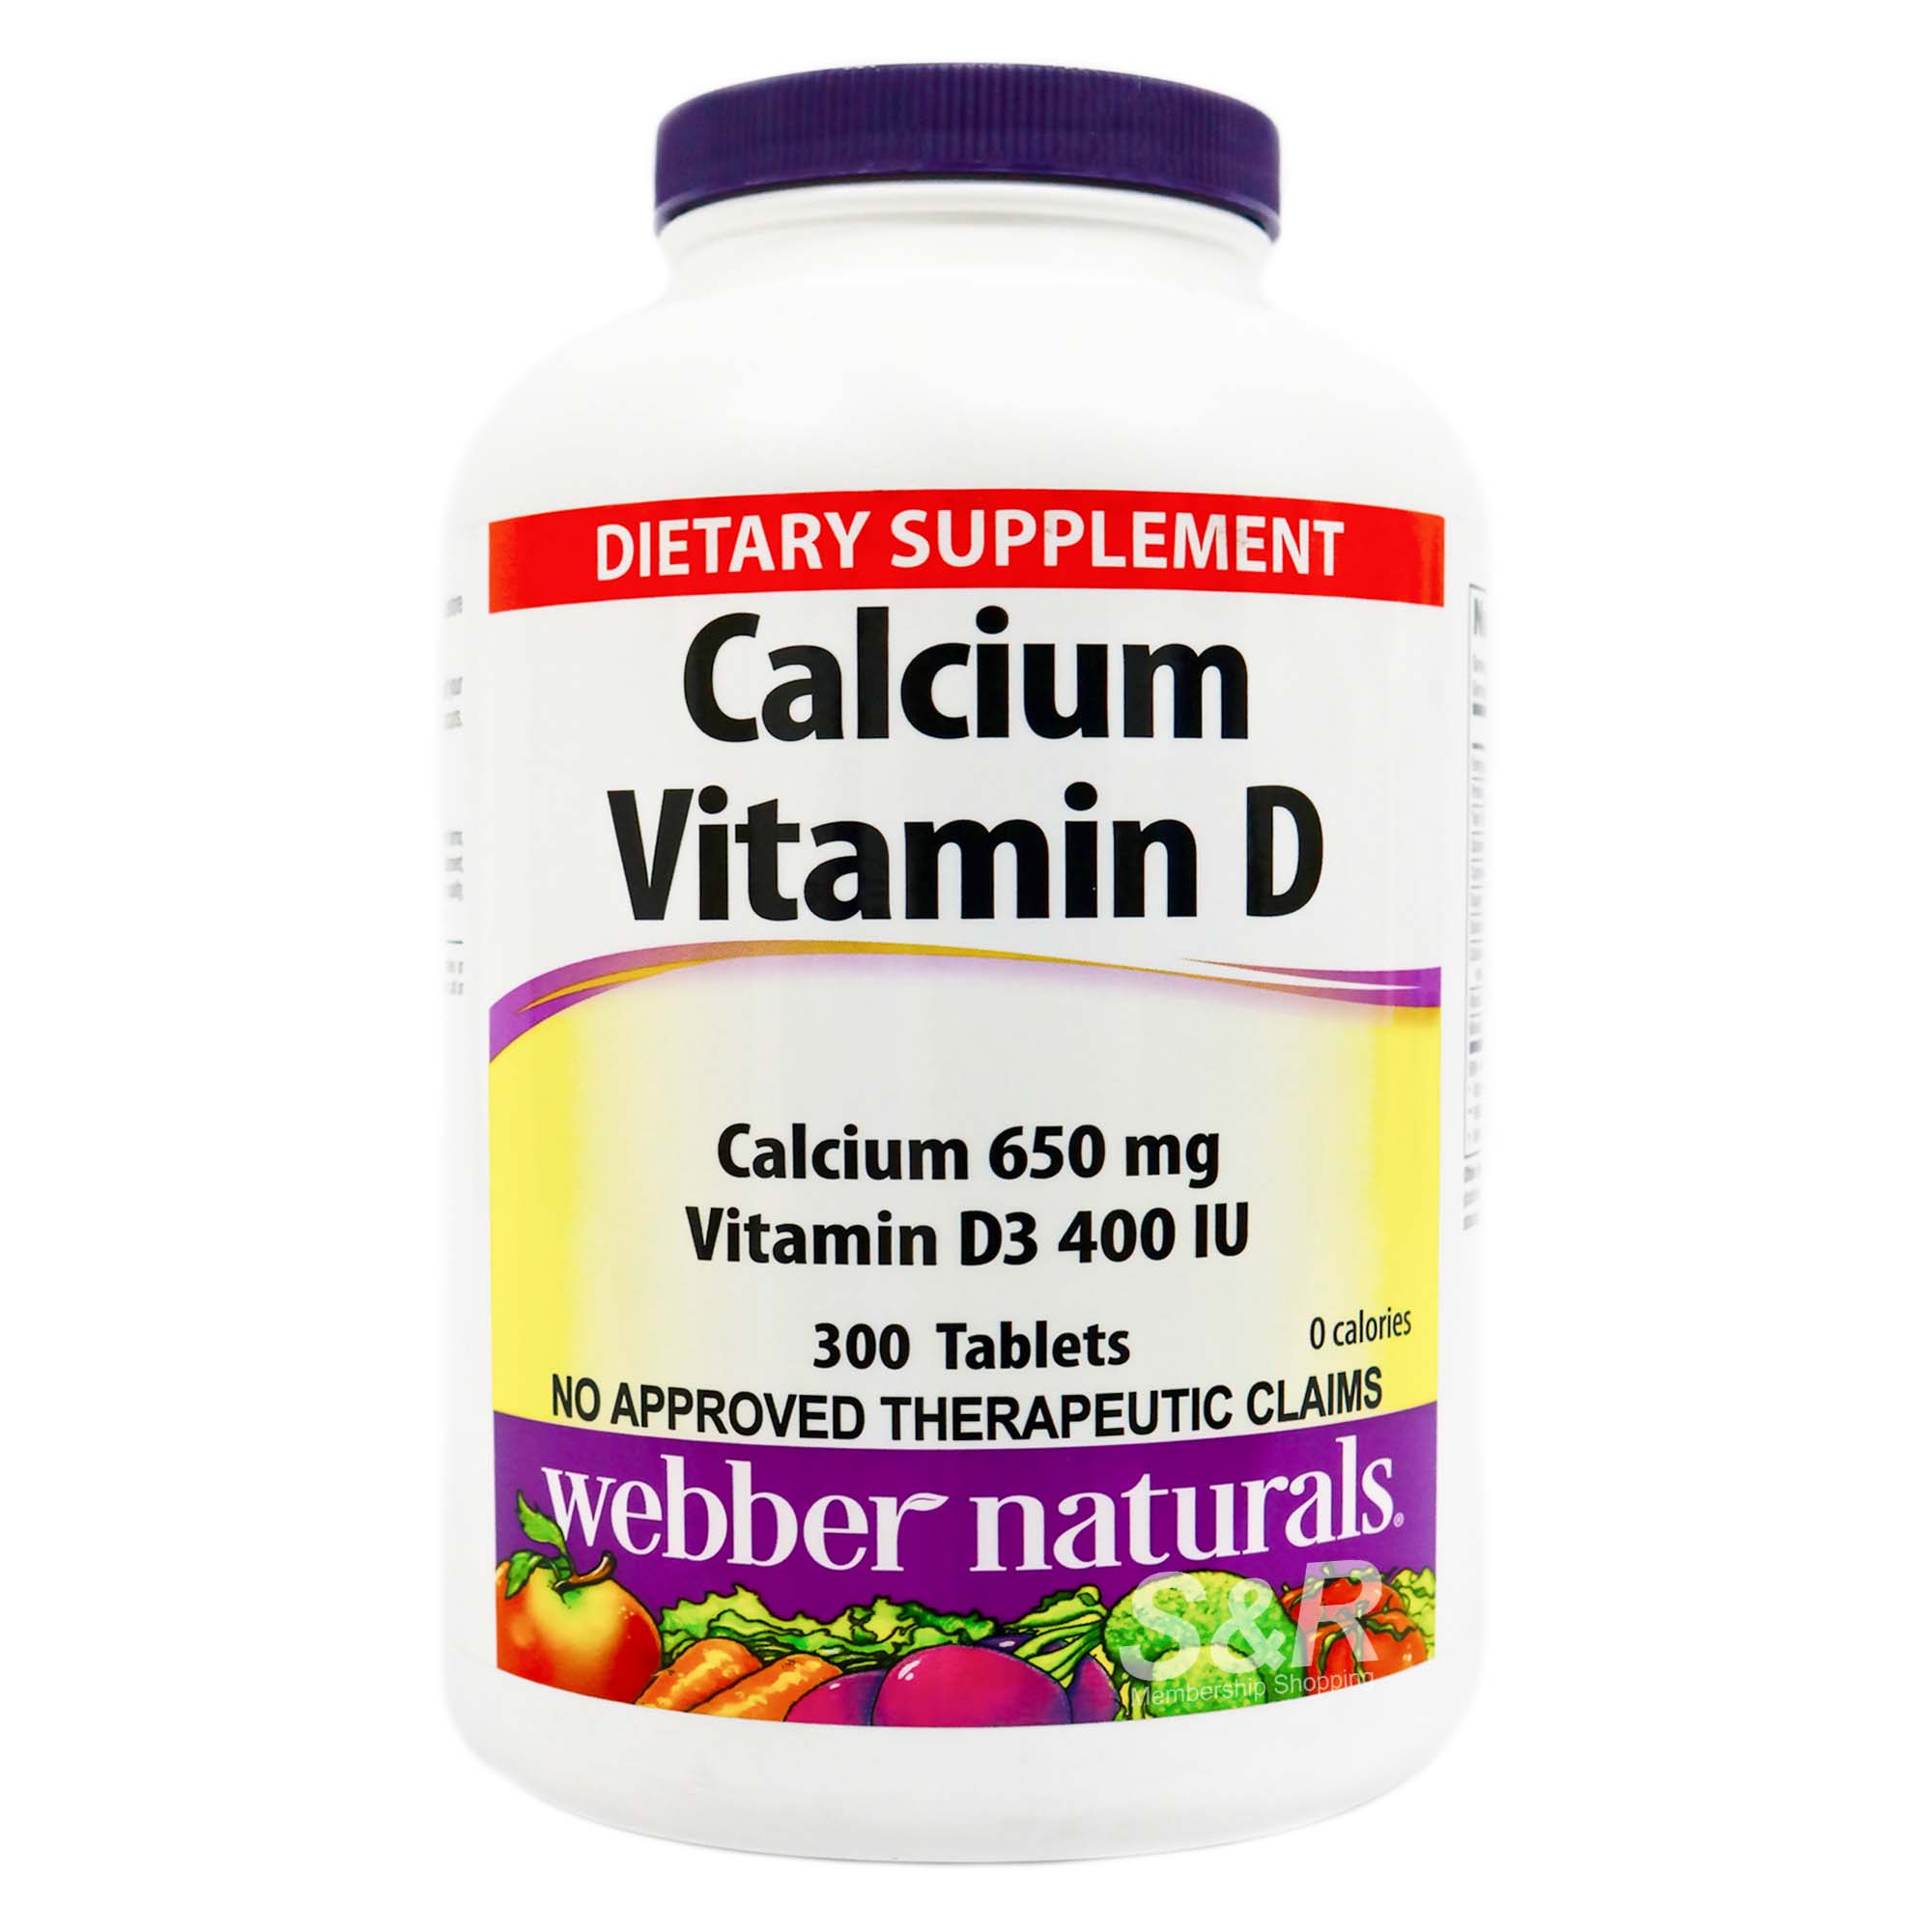 Webber Naturals Calcium 650mg Vitamin D3 400 IU 300 tablets